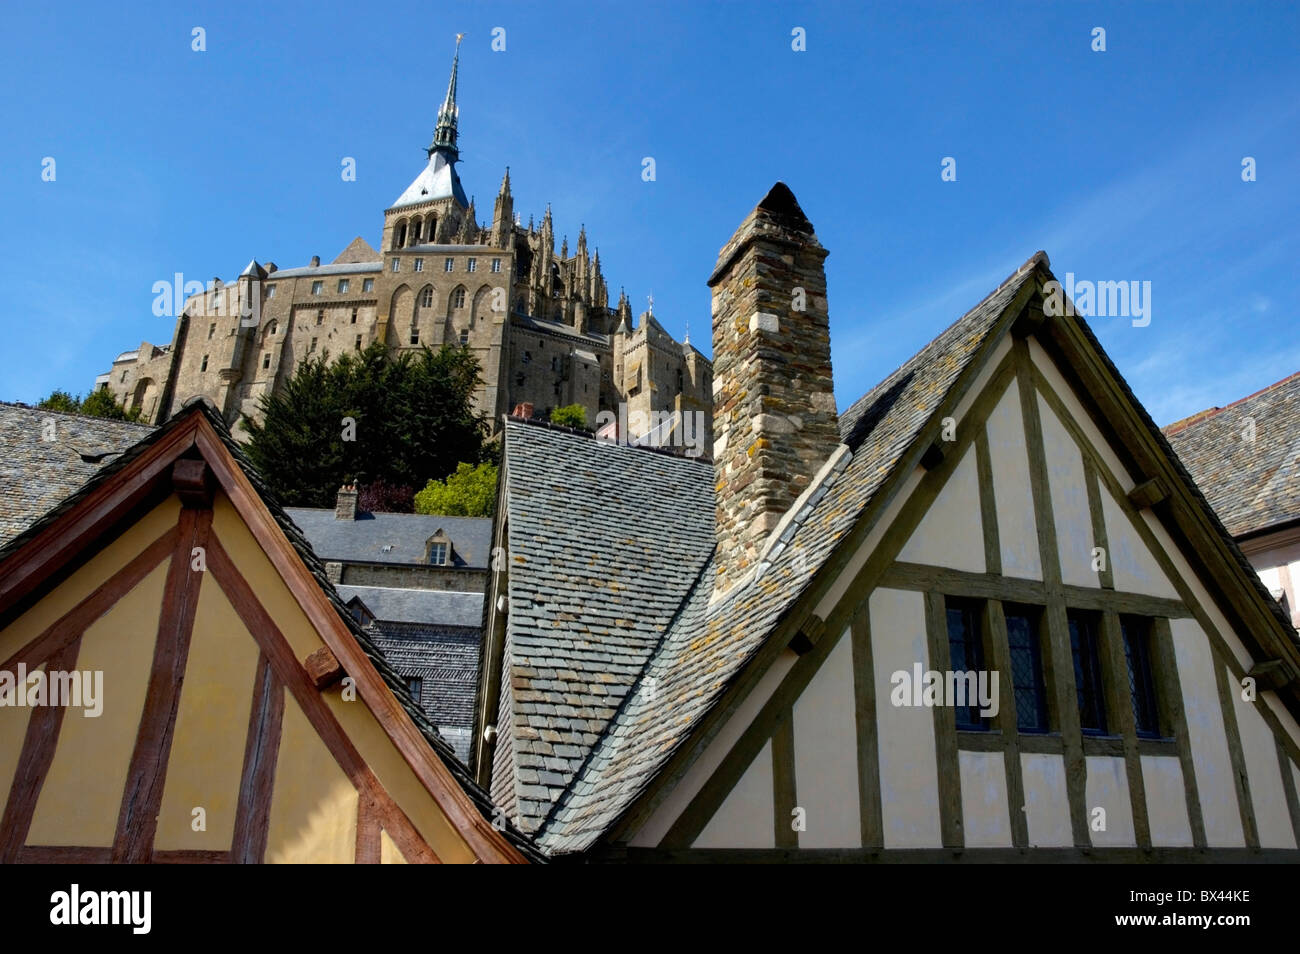 Tipiche case nella città vecchia che circonda Mont Saint-Michel, fortificata del monastero medievale su un isola in Normandia, Francia. Foto Stock